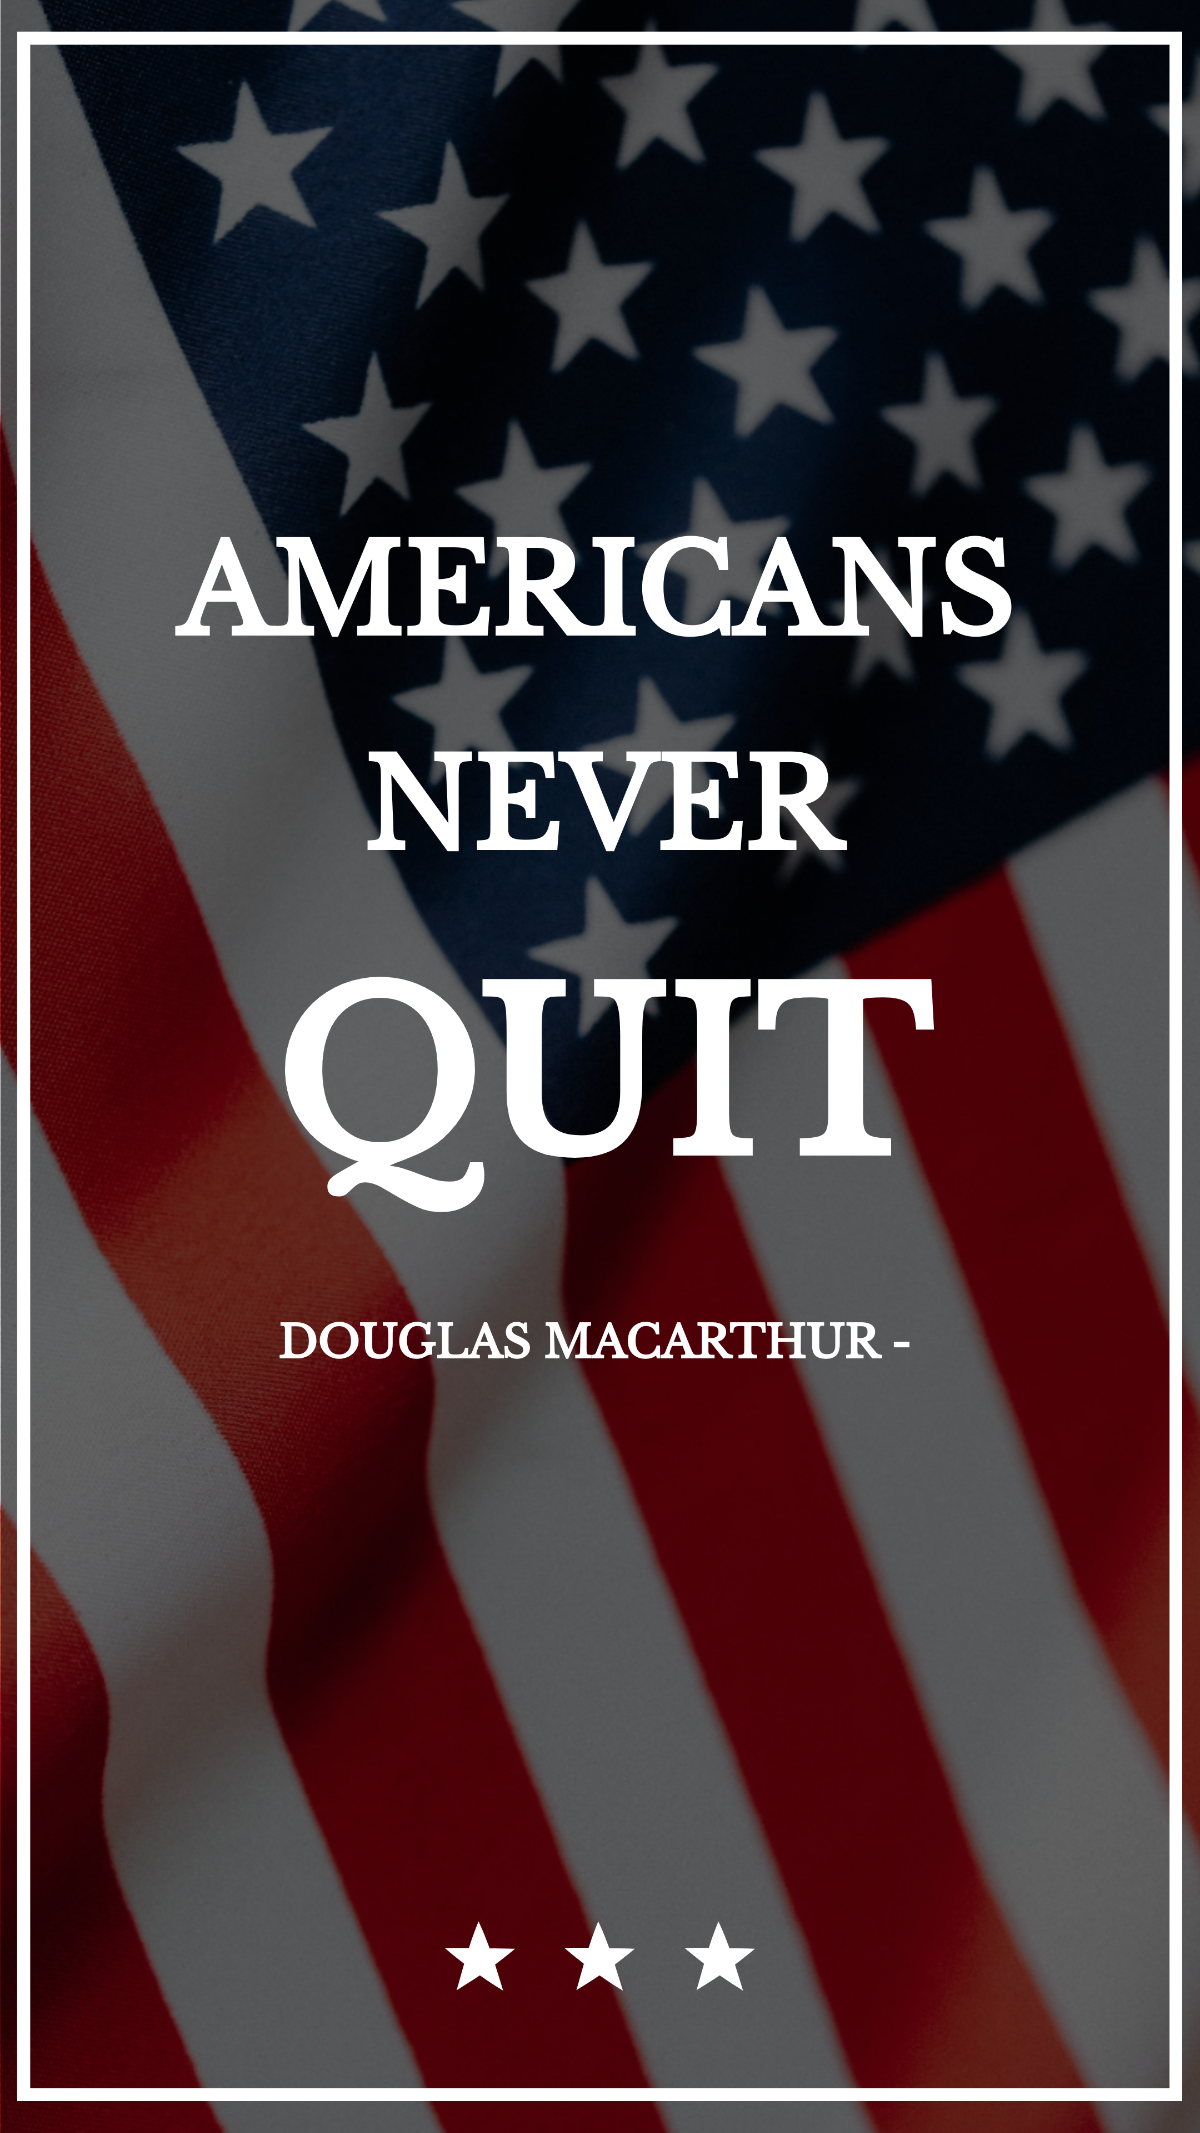 Douglas MacArthur - Americans never quit. Template